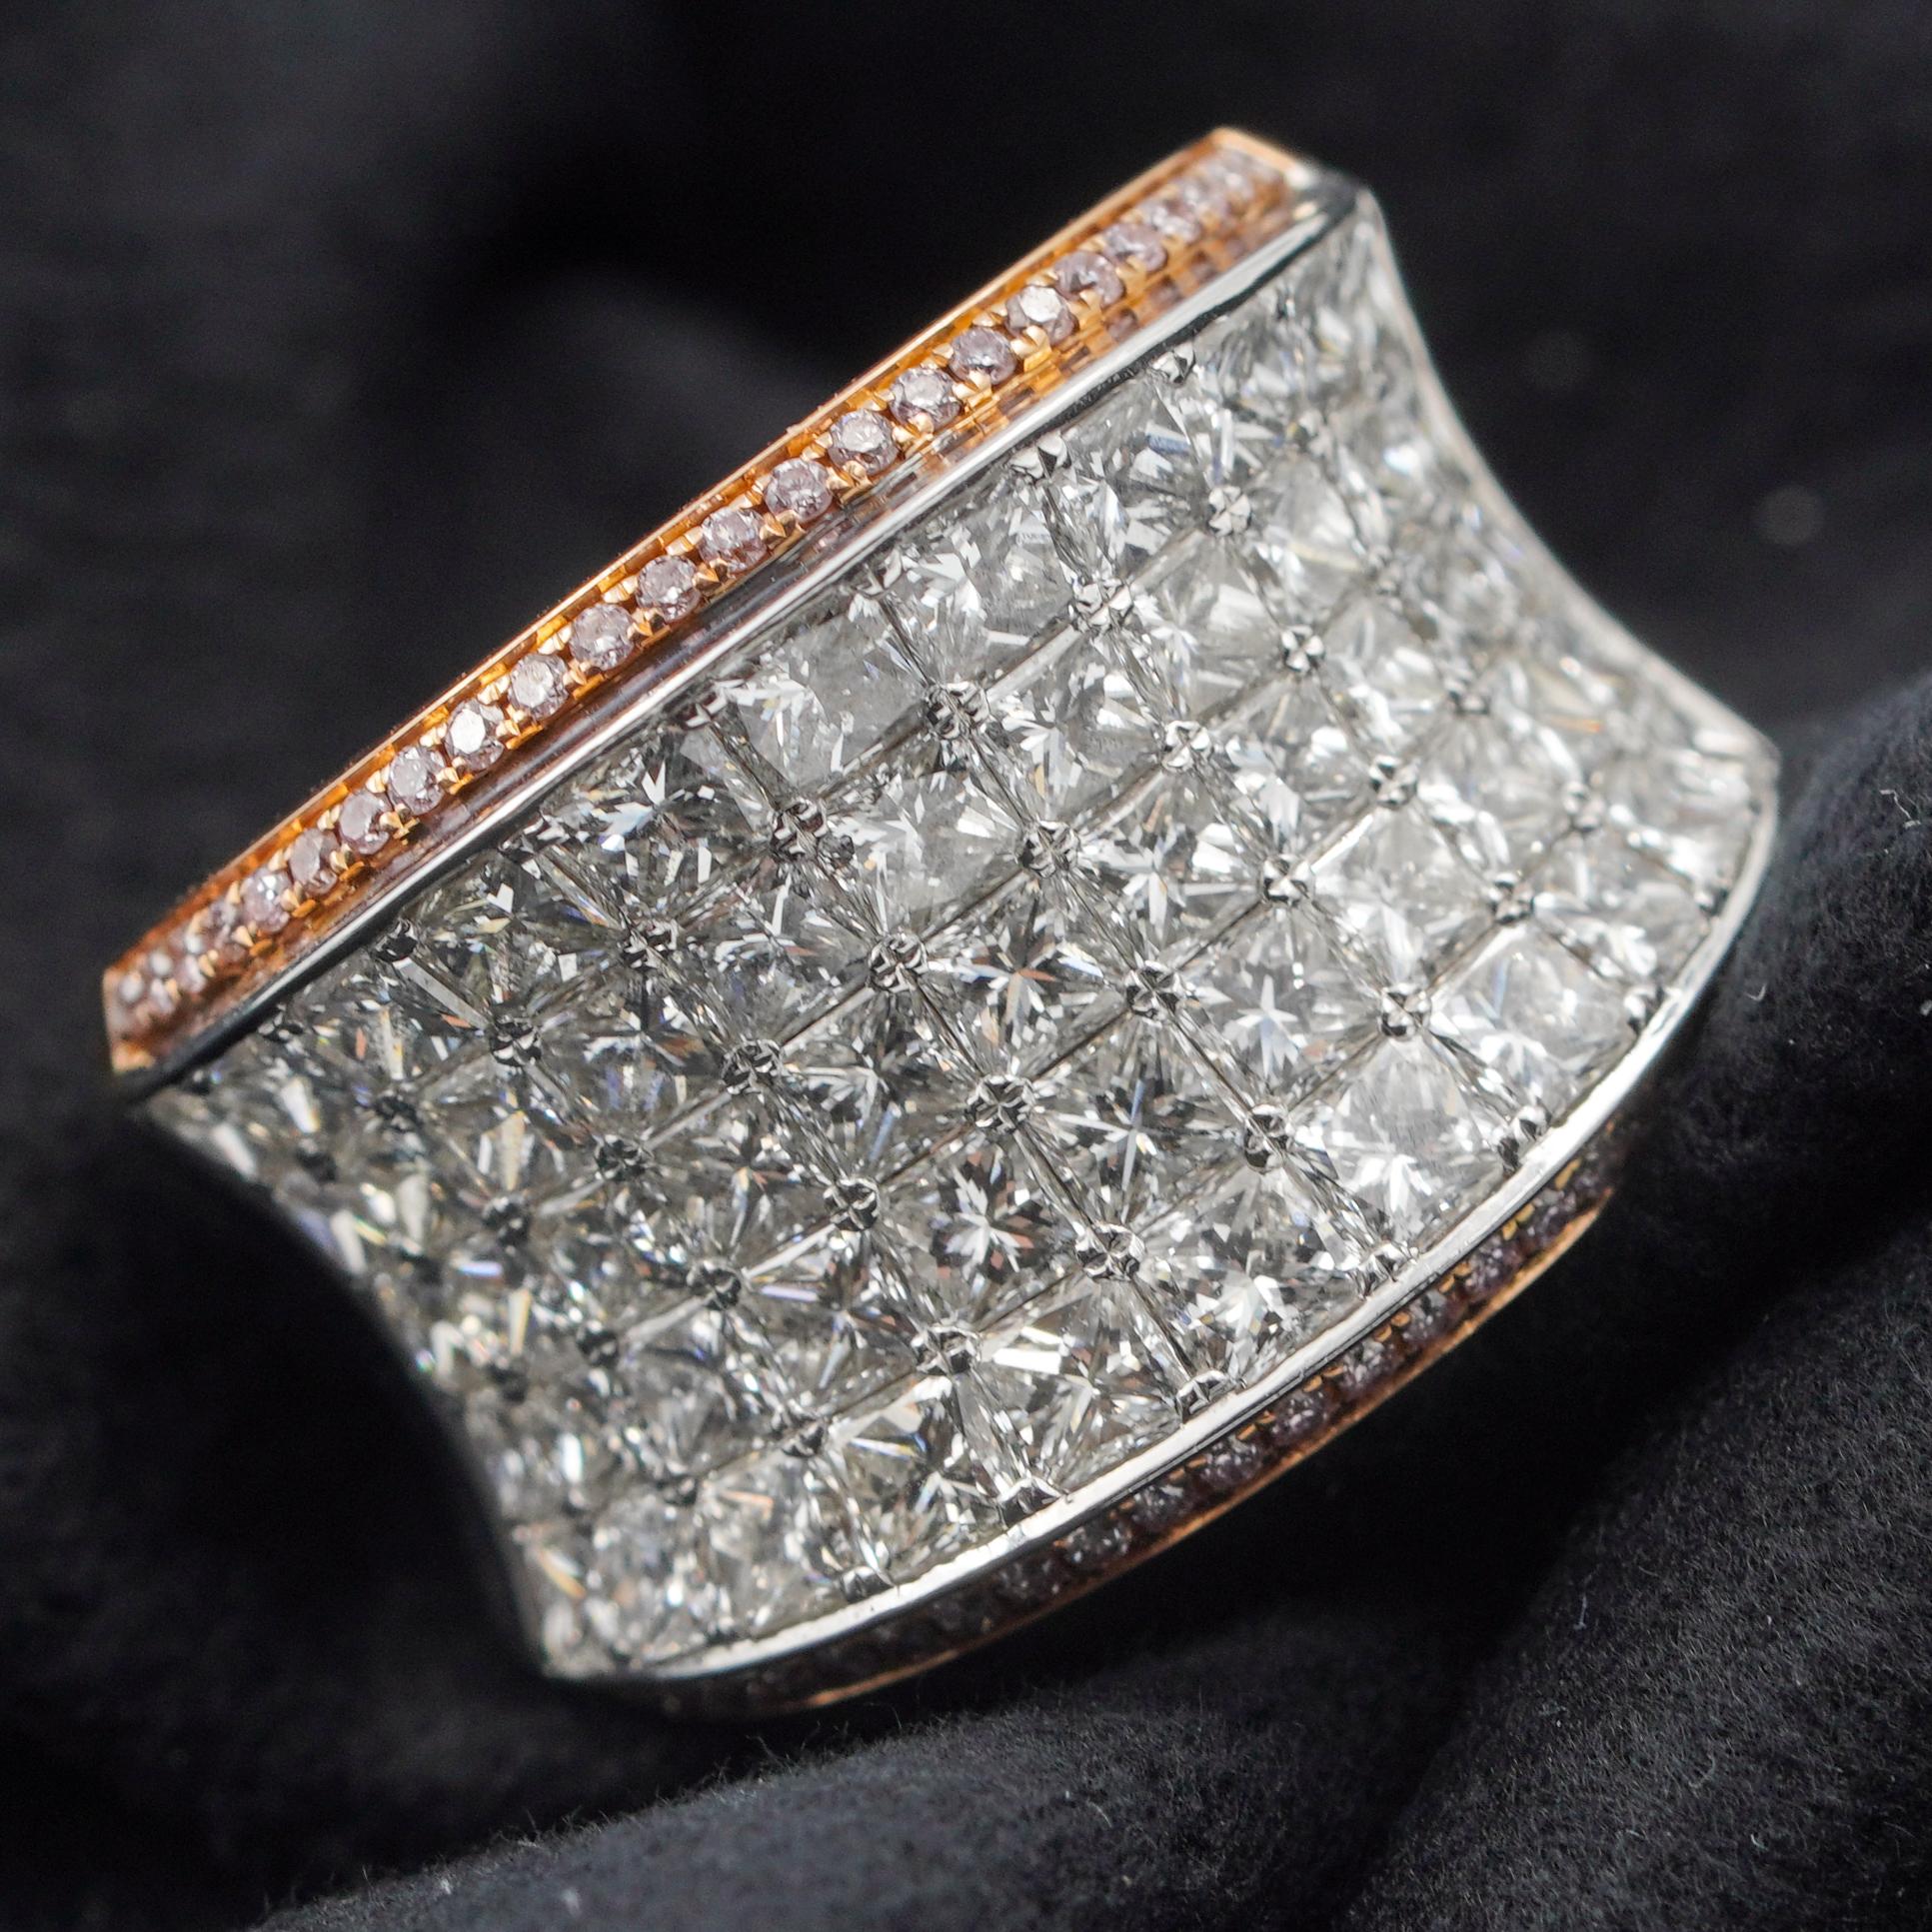 Cette brillante bague à diamant bicolore joue avec la lumière et ne manquera pas de se distinguer à votre doigt. La pièce est recouverte de diamants pavés totalisant 4,17 carats. Le pavé central est encadré par de petits diamants roses sertis dans